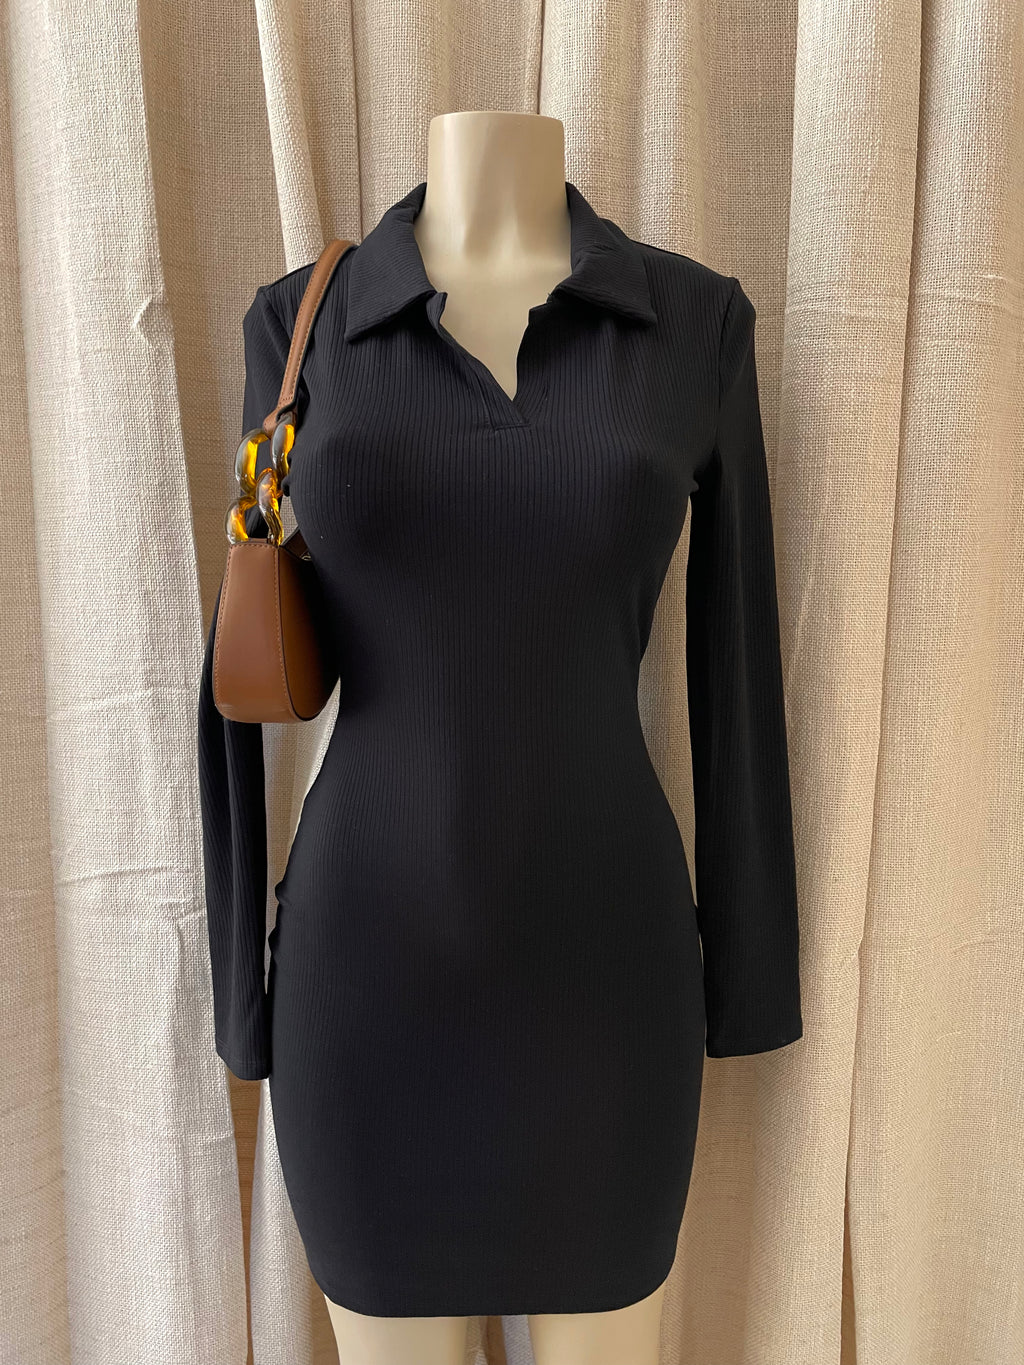 The “Caroline” Ribbed Collar Dress In Black